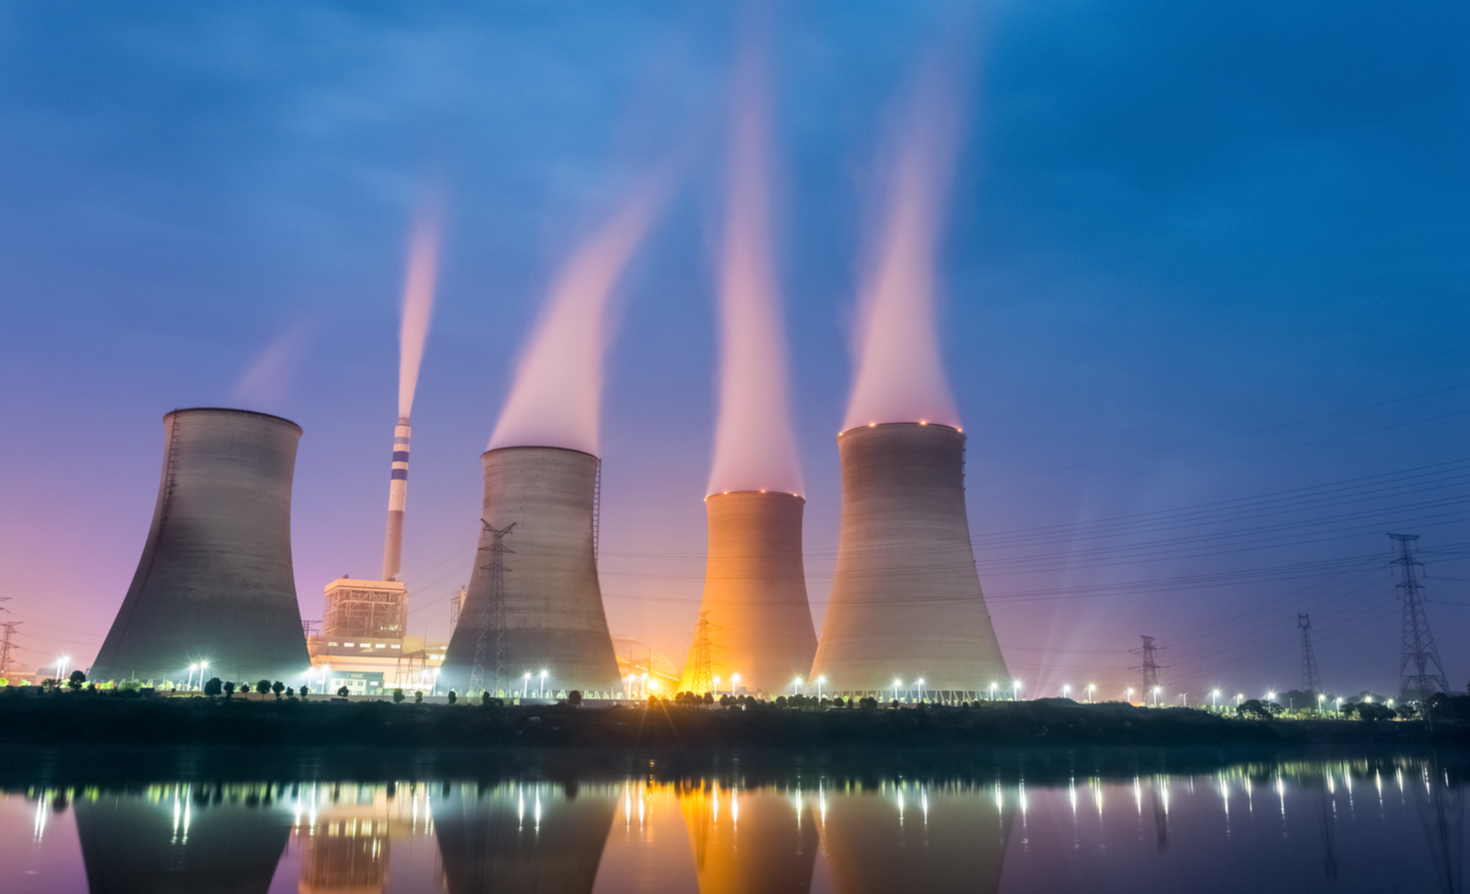 परमाणु ऊर्जा पर जाने से घरों और उद्योगों के लिए बिजली की कीमतें कैसे प्रभावित होंगी?